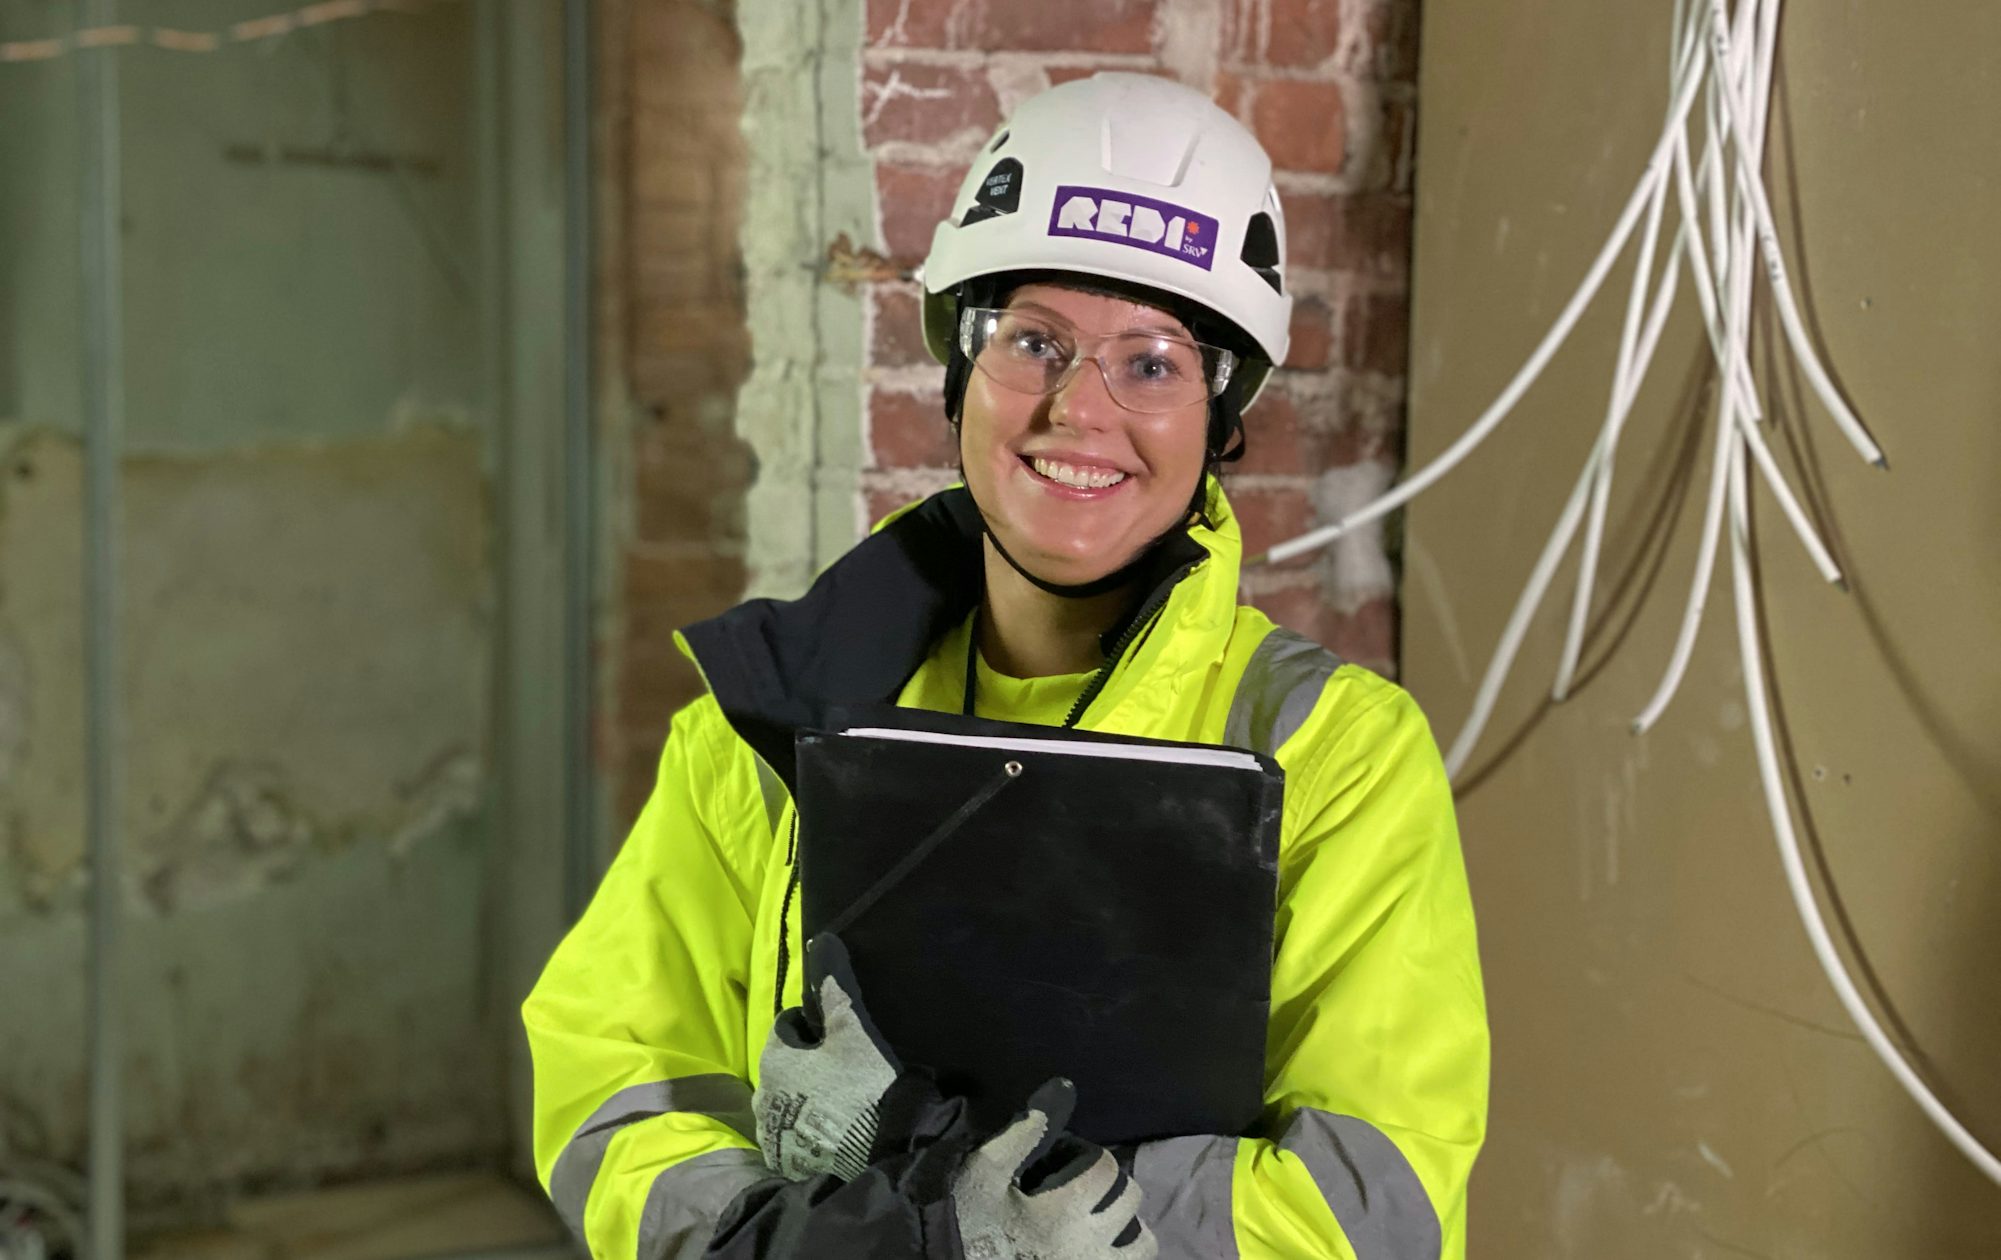 Uusi ura ja varma työpaikka 6 kuukaudessa – kouluttaudu rakennusalan halutuksi ammattilaiseksi